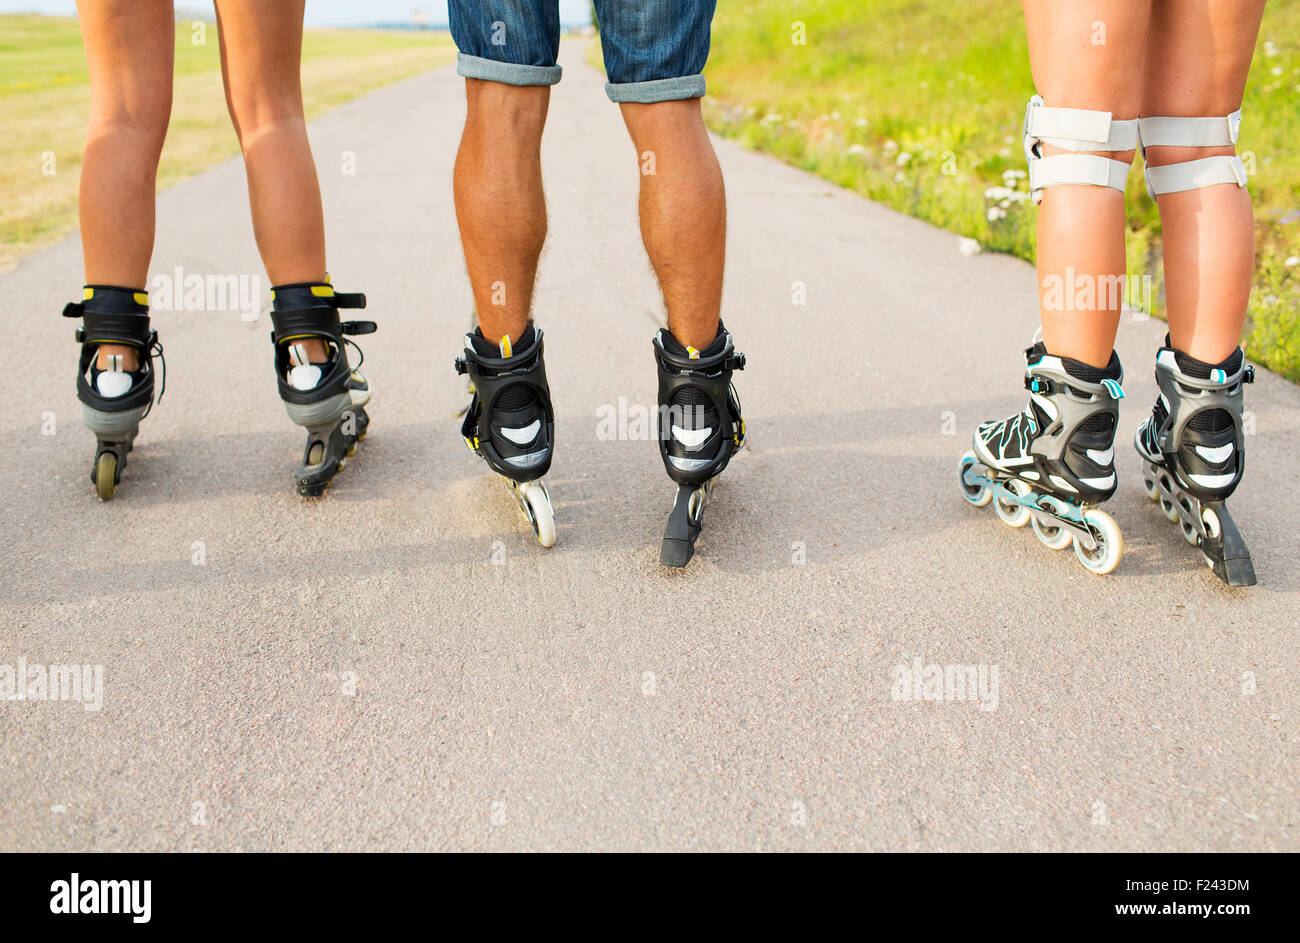 Nahaufnahme der Beine in Skates Skaten auf Straße Stockfoto